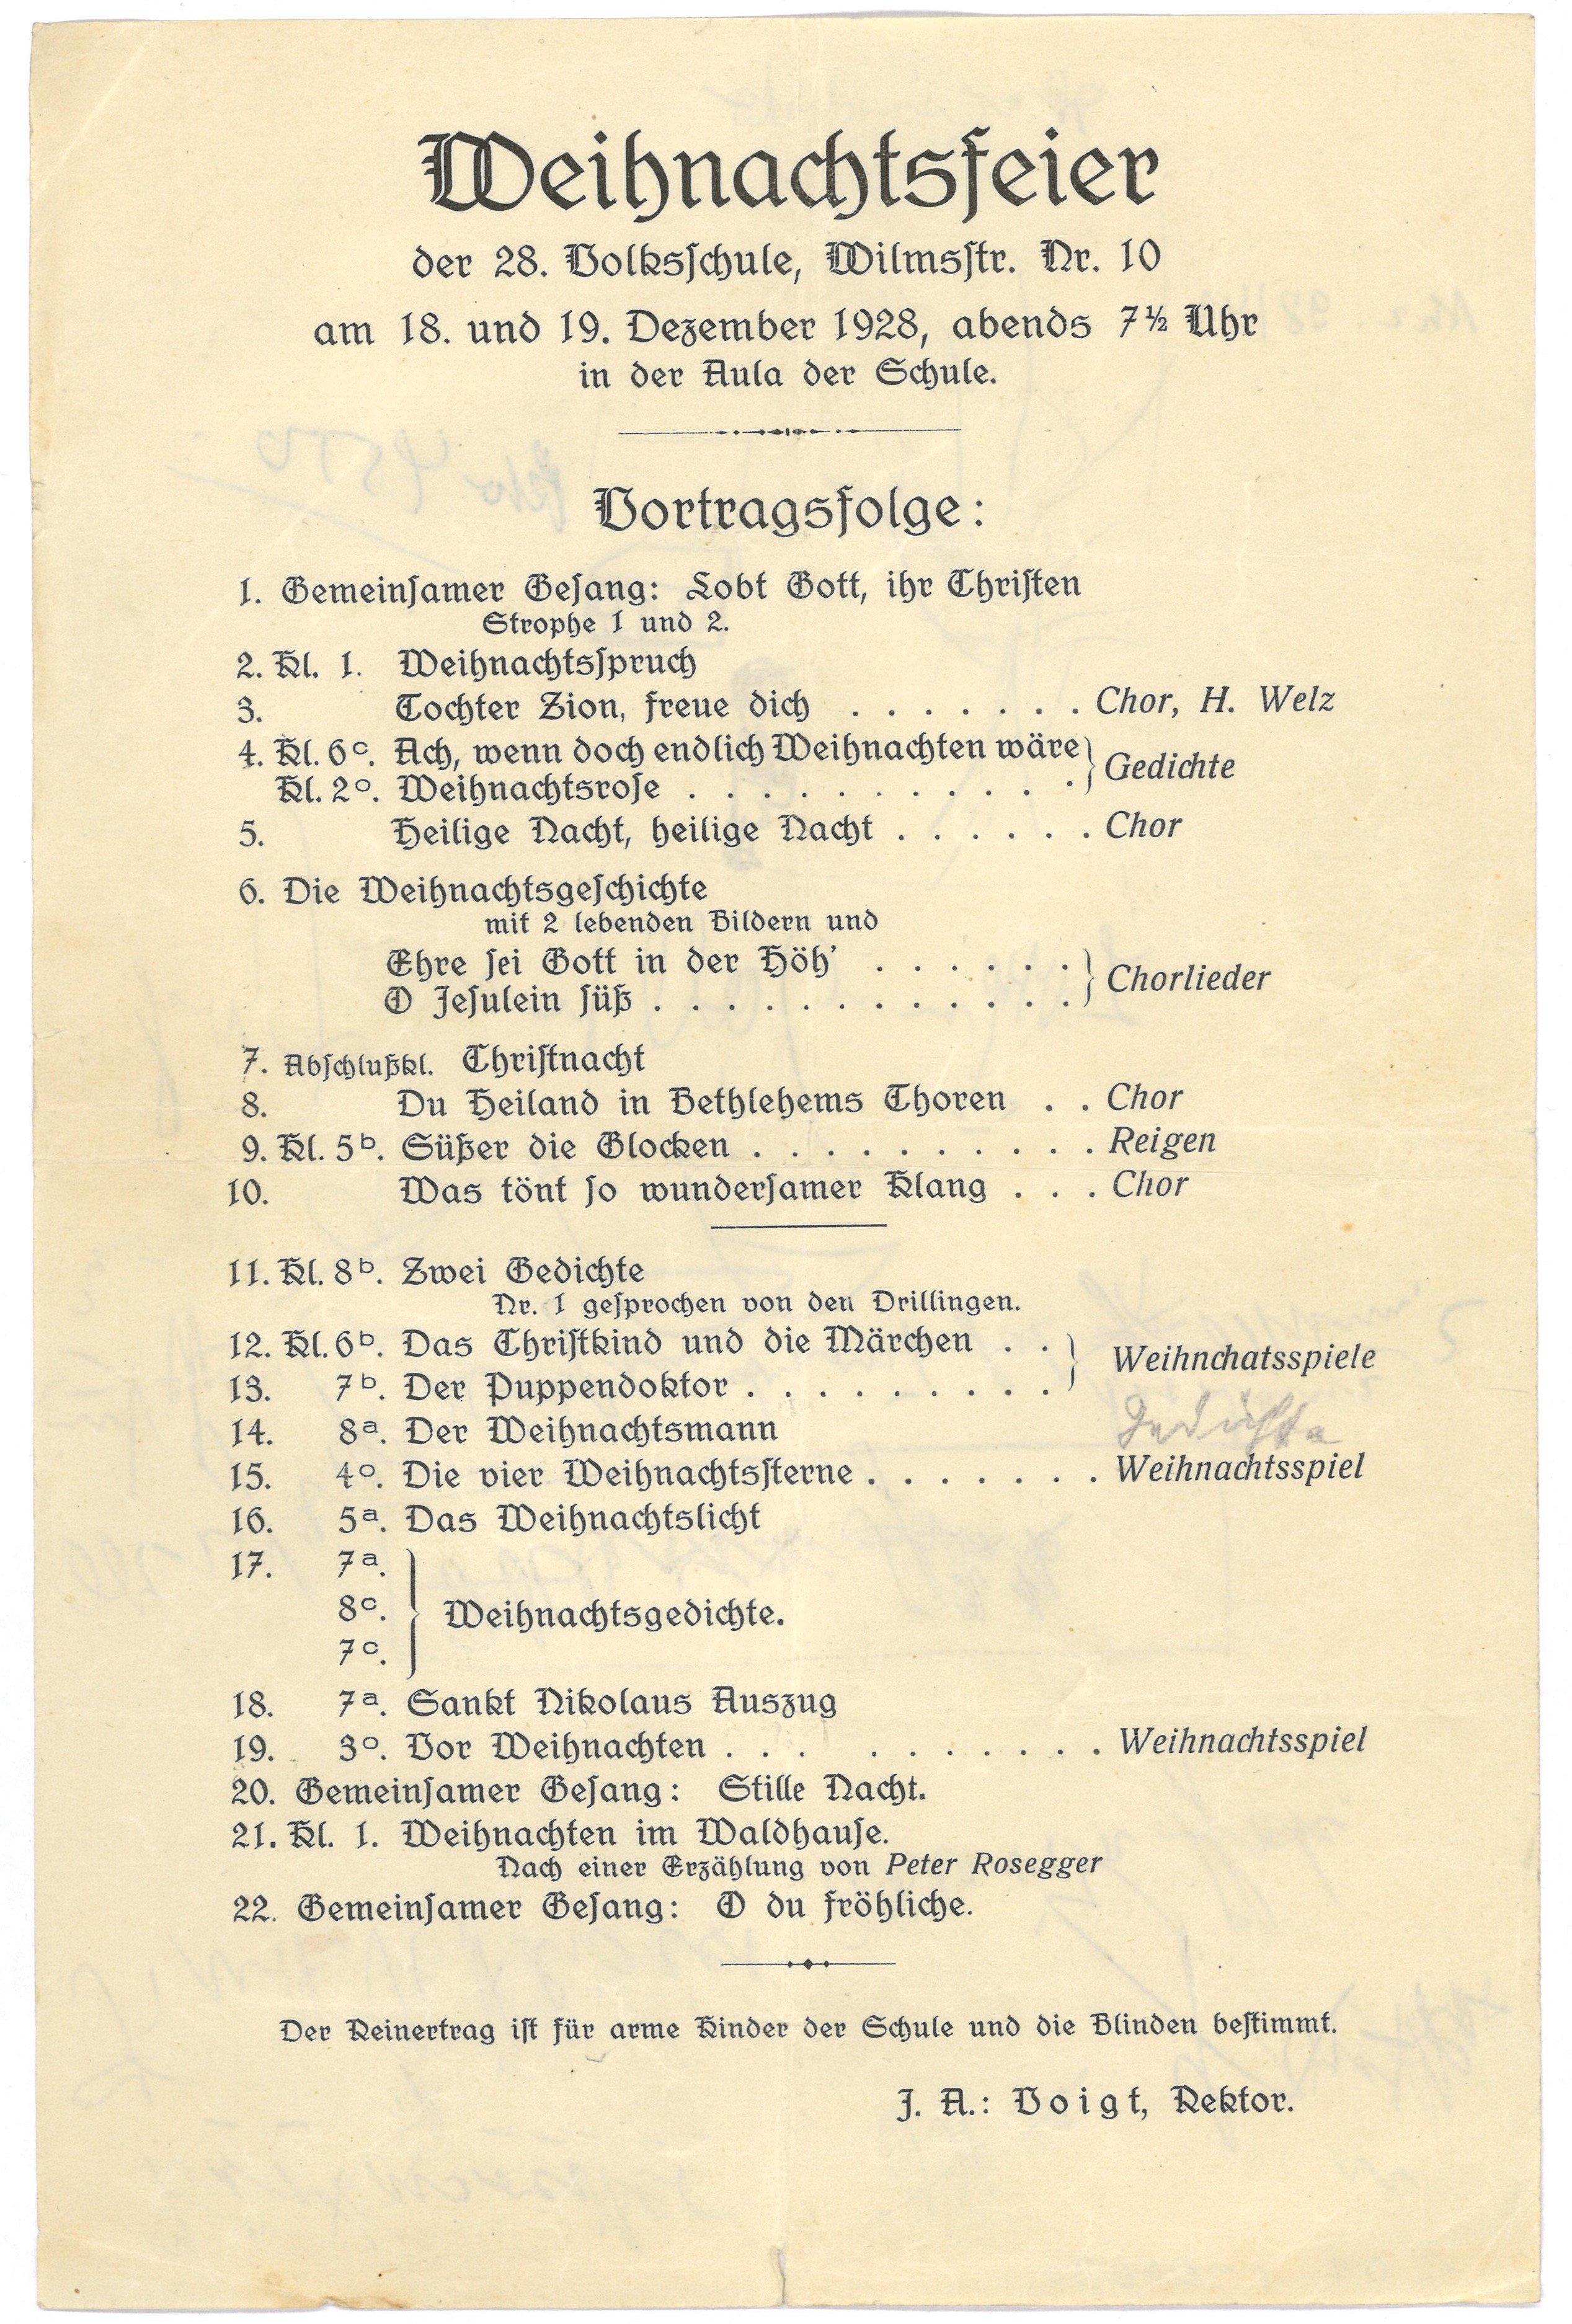 Programm der Weihnachtsfeier der 28. Volksschule in Berlin 1928 (Landesgeschichtliche Vereinigung für die Mark Brandenburg e.V., Archiv CC BY)